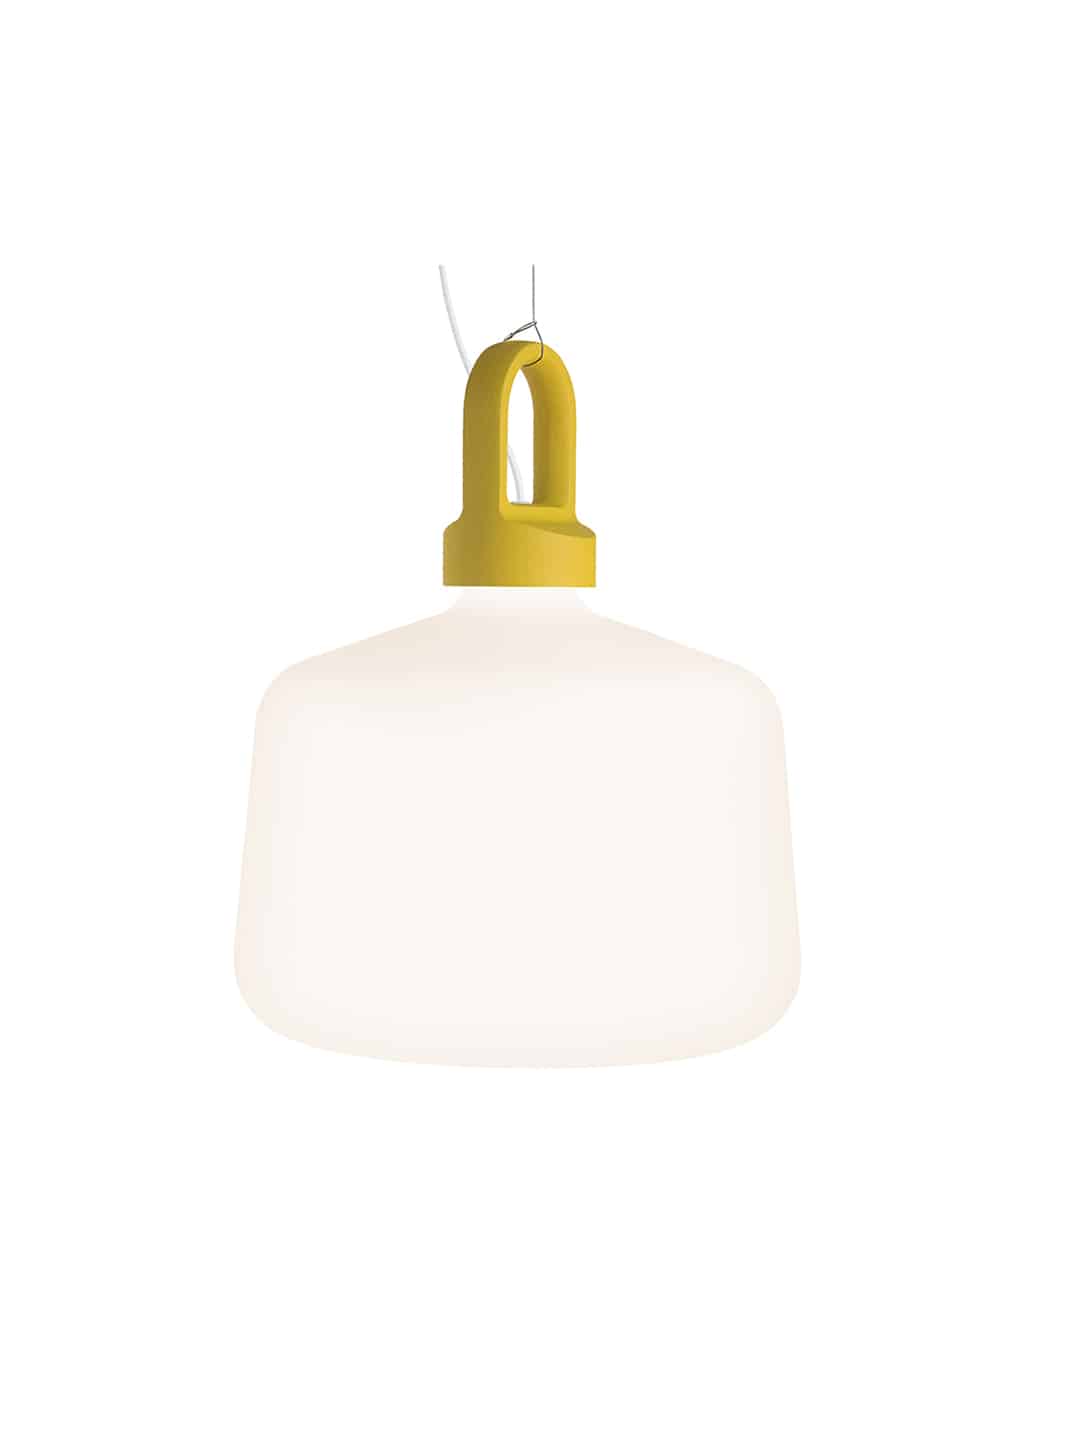 Премиум подвесной светильник Zero Lighting Bottle с желтым креплением